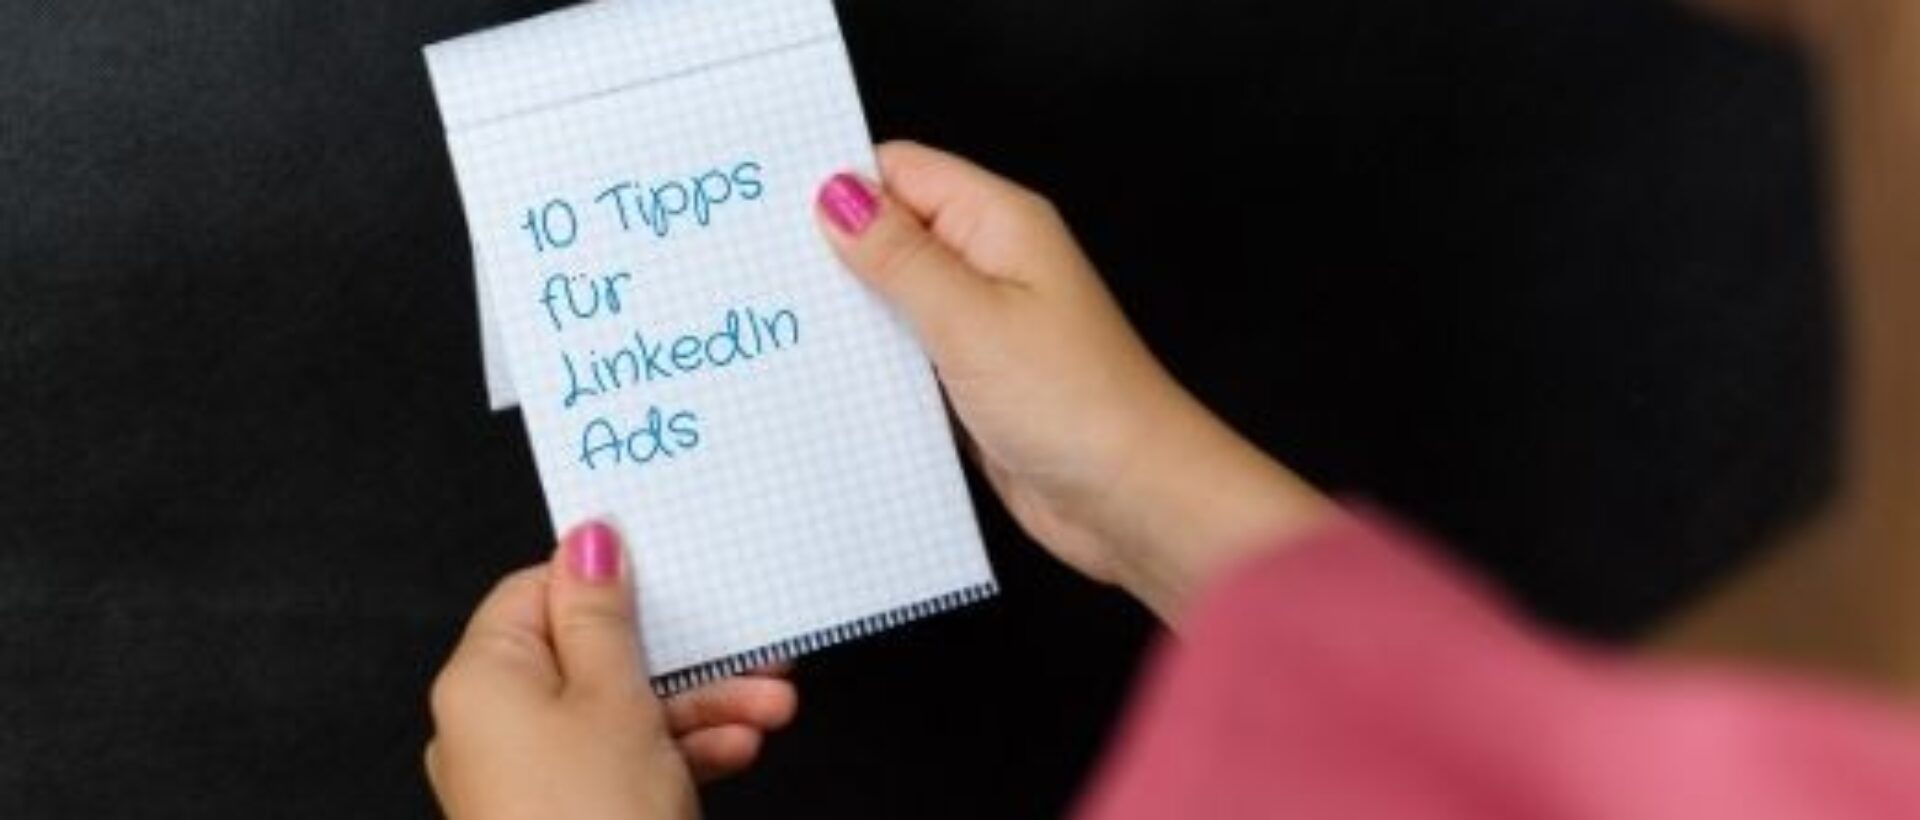 10 Tipps für Linkedin Ads auf einem Schreibblock